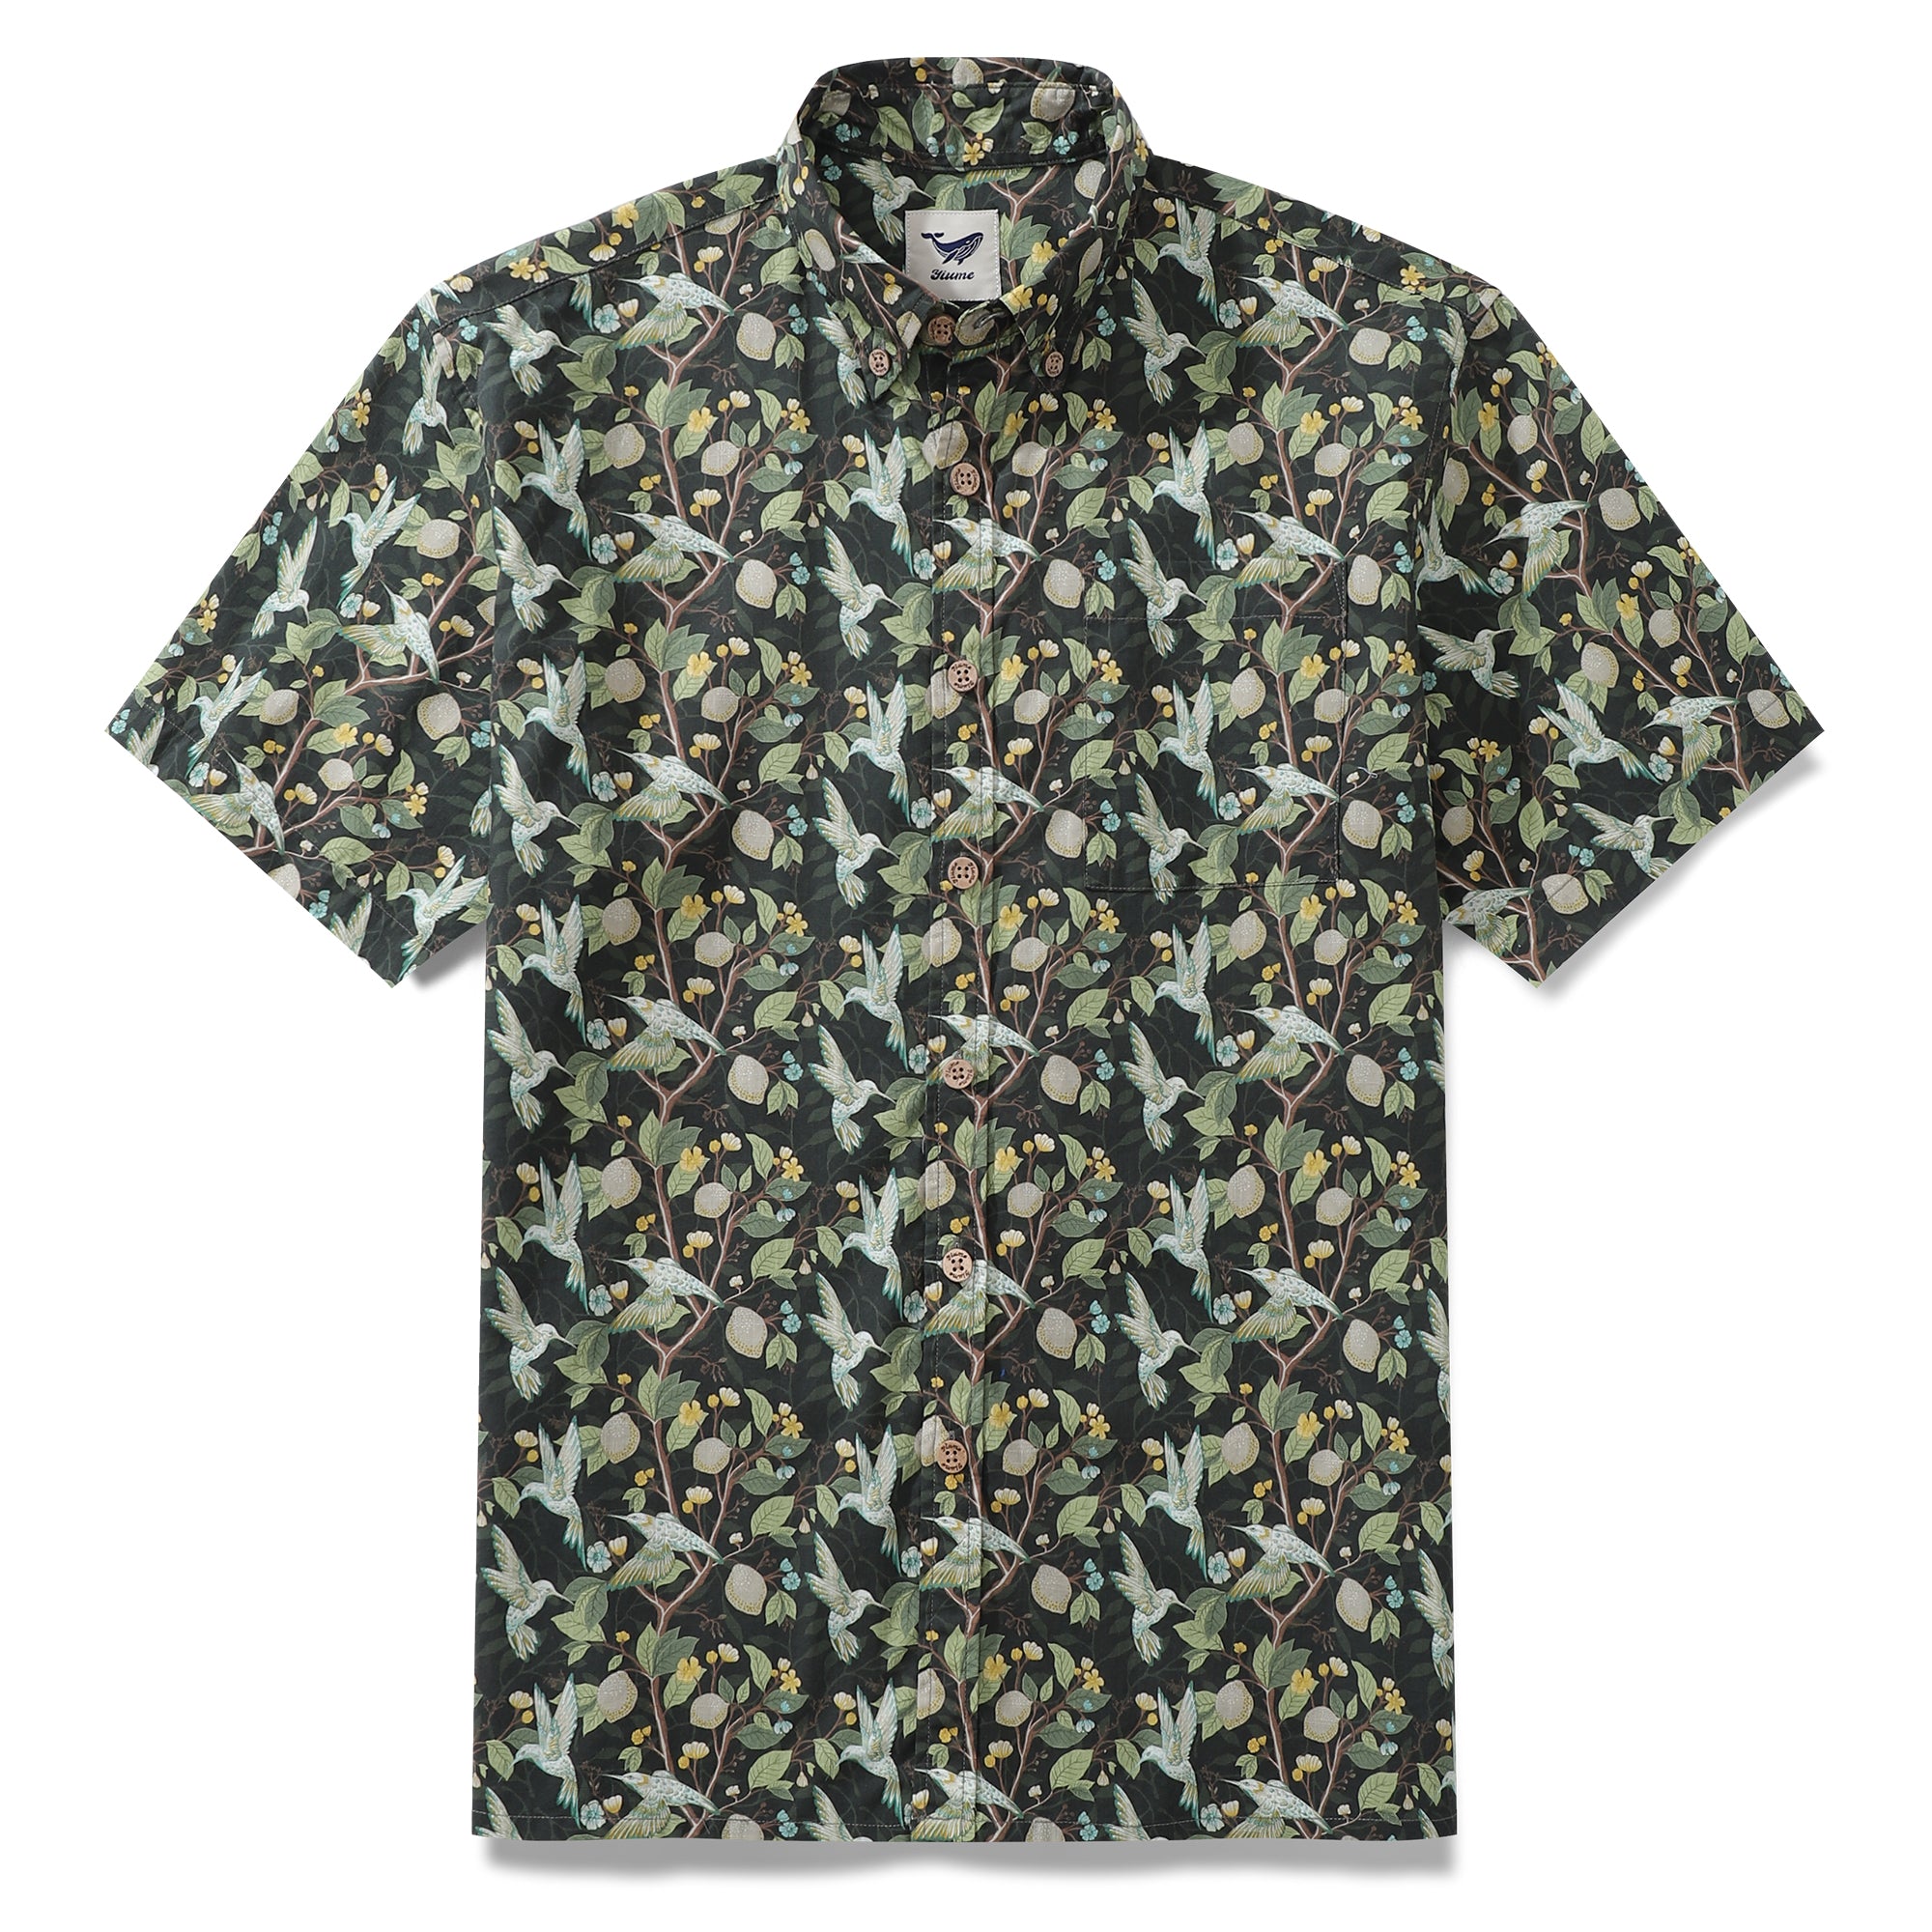 Men's Hawaiian Shirt Hummingbird Print Cotton Button-down Short Sleeve ...